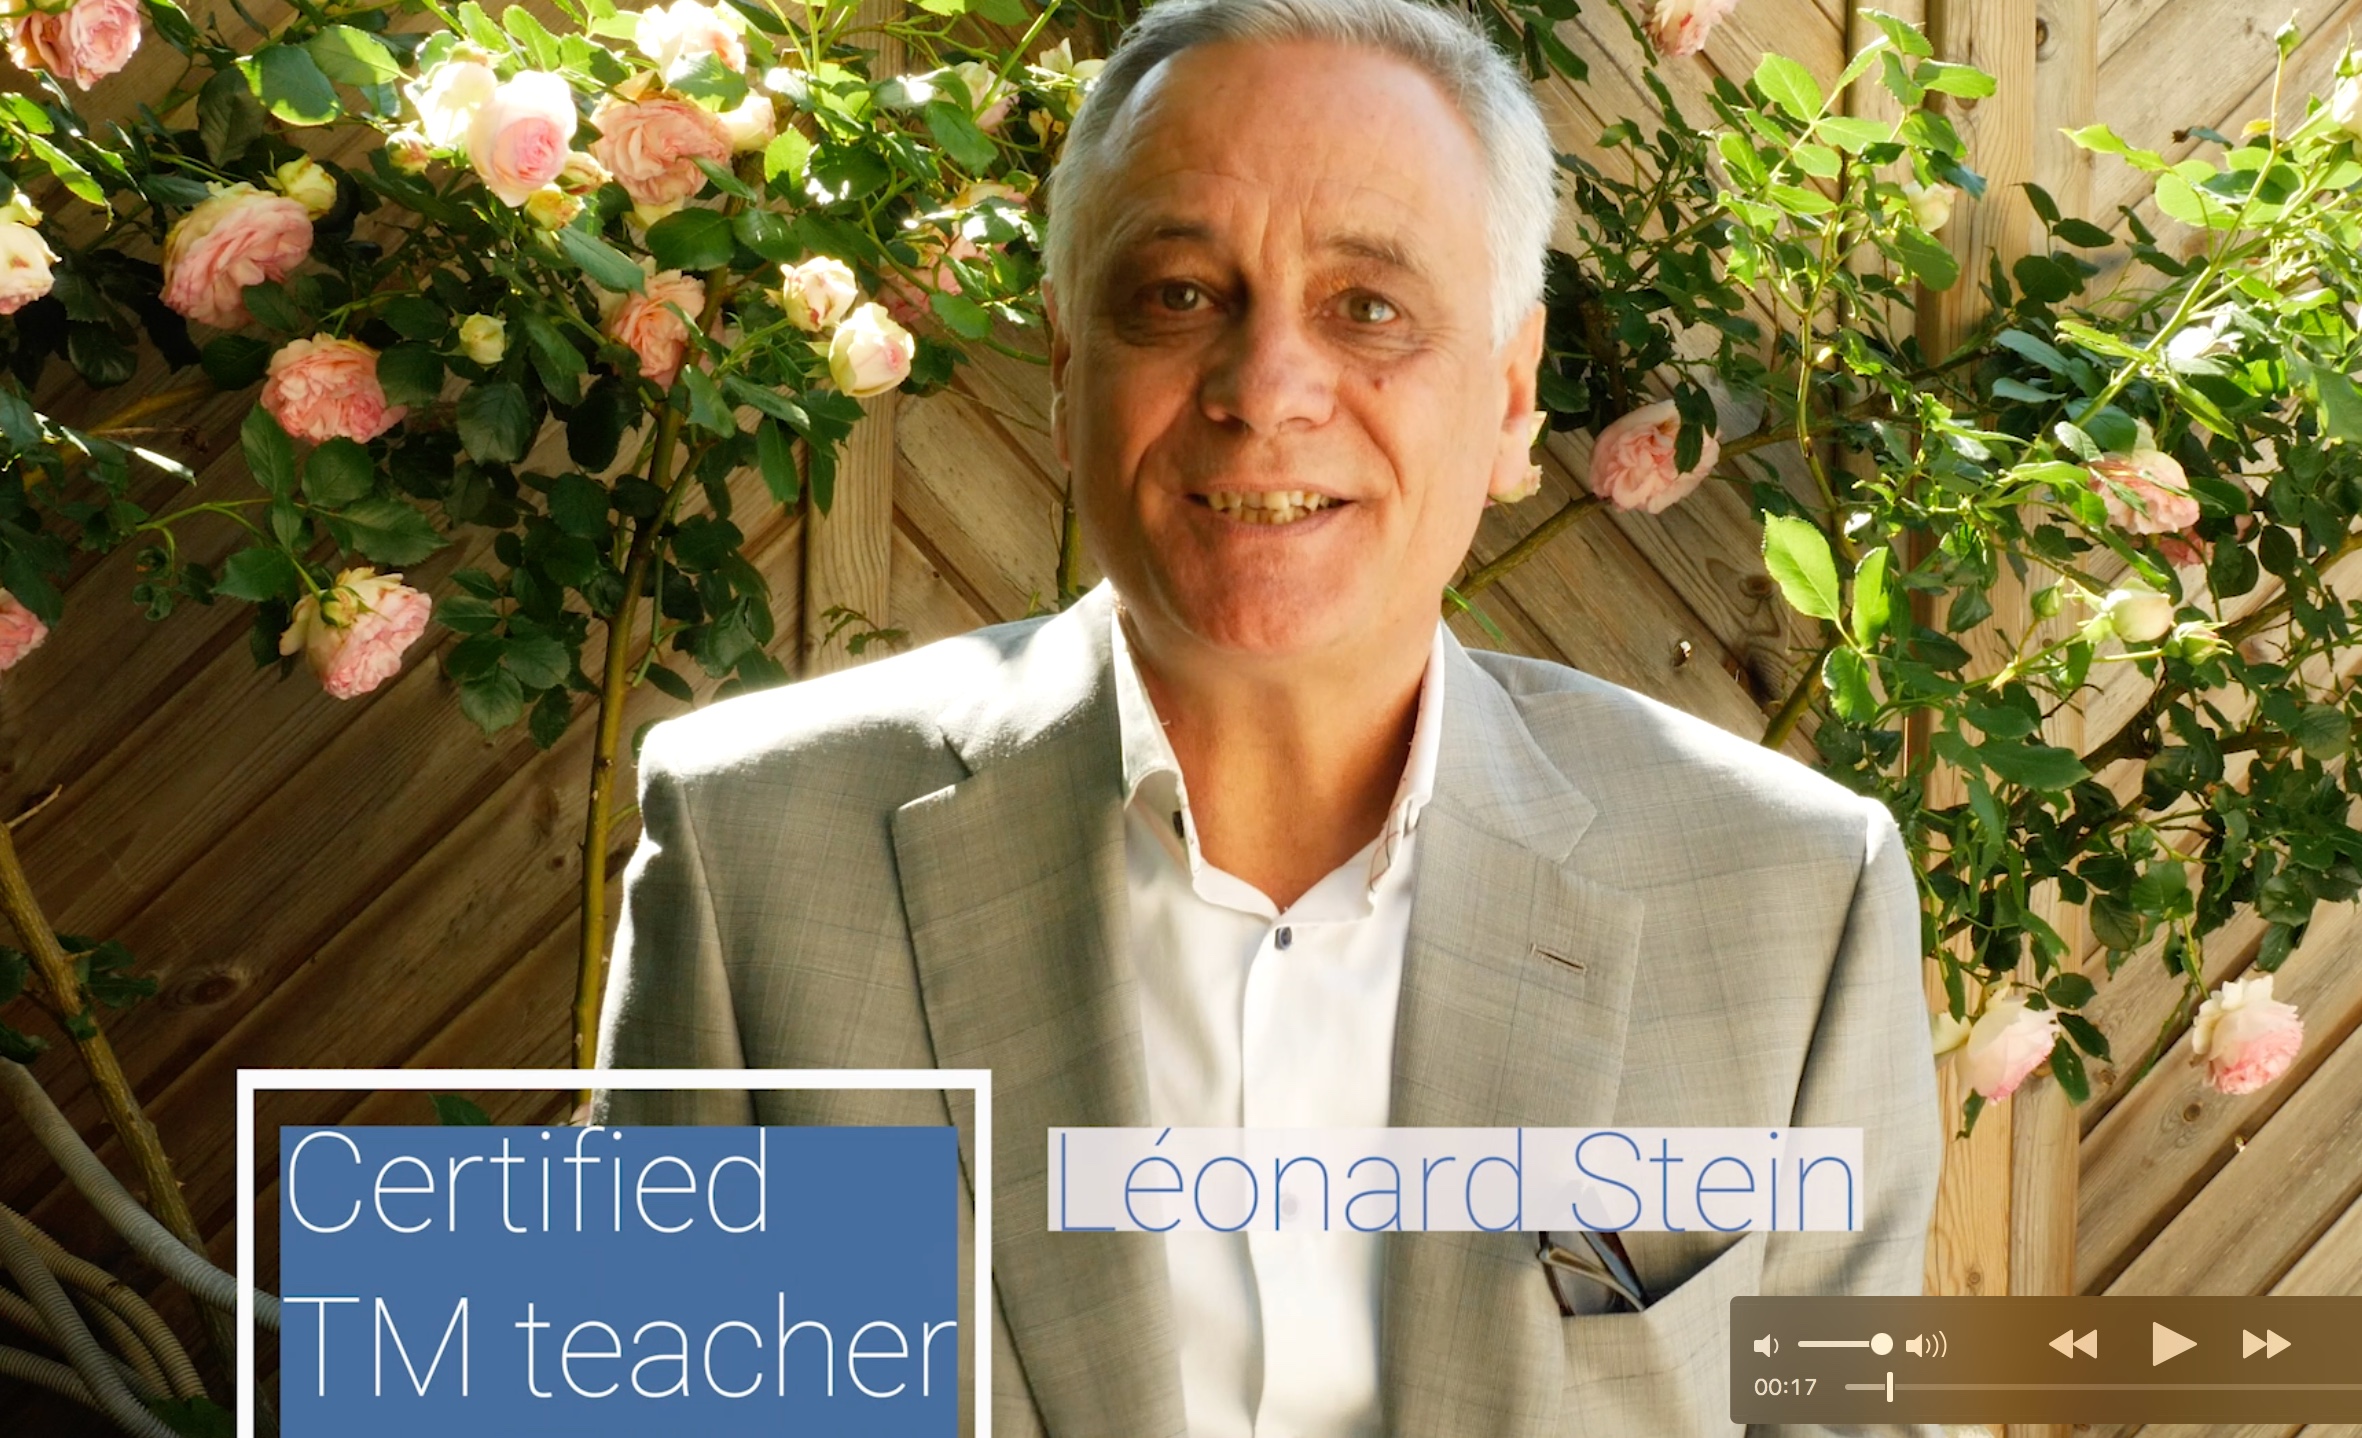 Leonard Stein